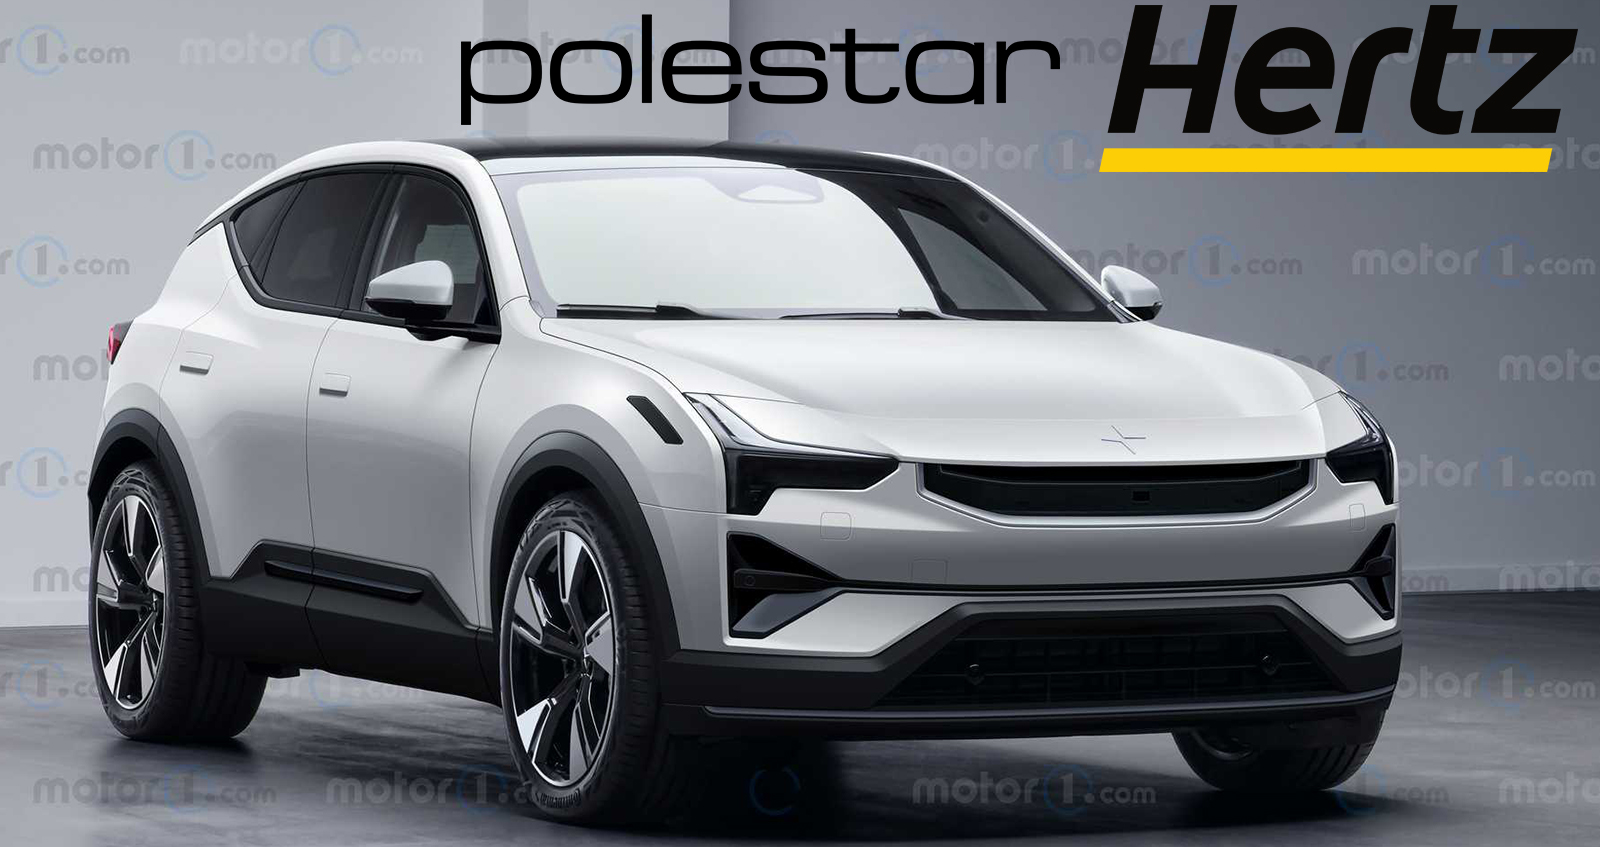 Hertz เปิดคำสั่งซื้อรถยนต์ไฟฟ้า Polestar EVs กว่า 65,000 คัน พร้อมเป็นผู้นำรถไฟฟ้าเช่า ใหญ่สุดในโลก